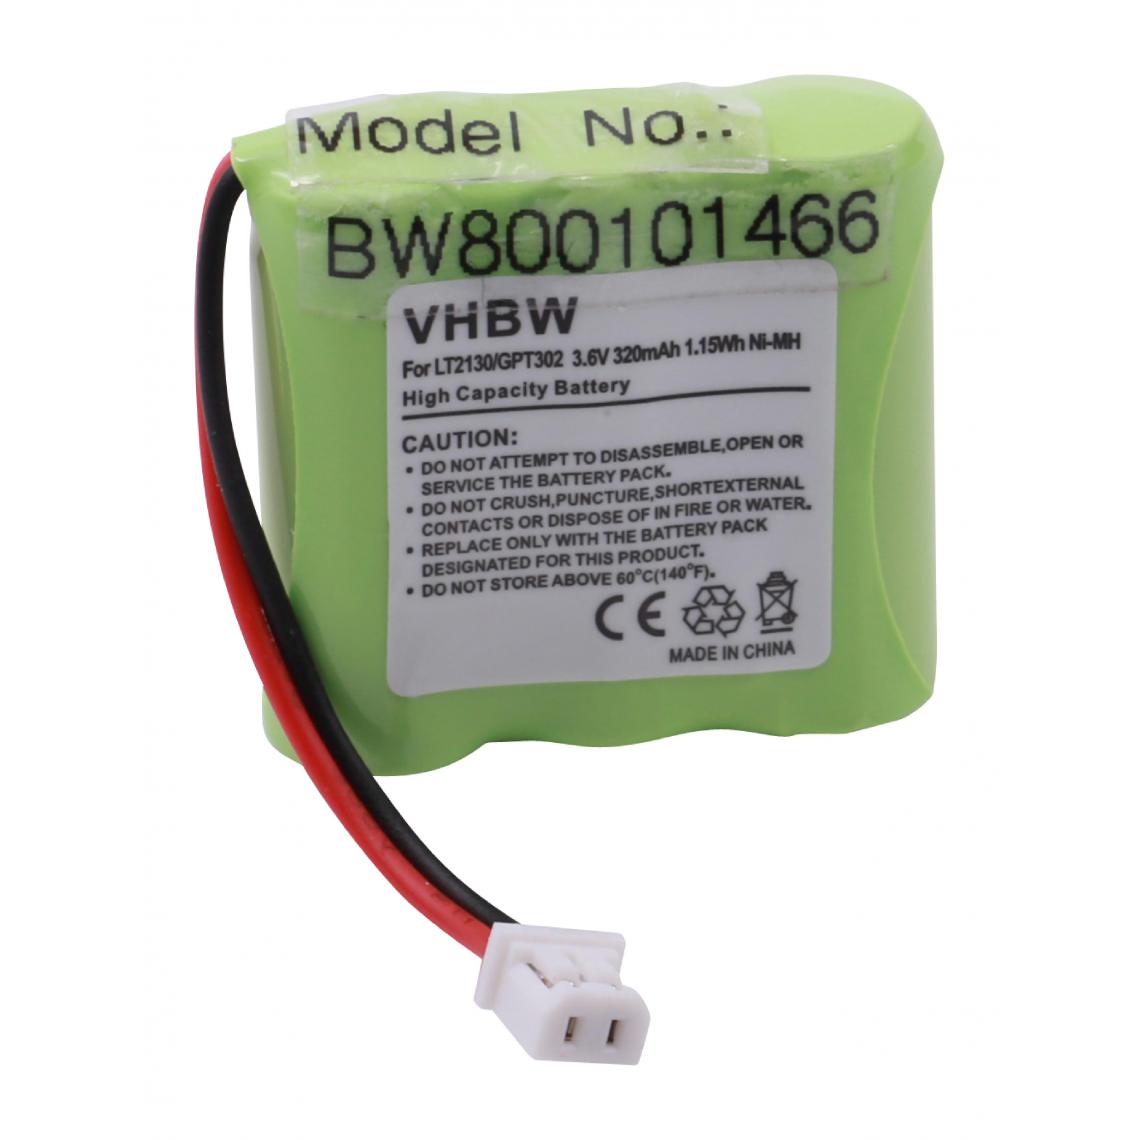 Vhbw - vhbw NiMH batterie 320mAh (3.6V) pour téléphone fixe sans fil Sagem D10T comme LT2130. - Batterie téléphone